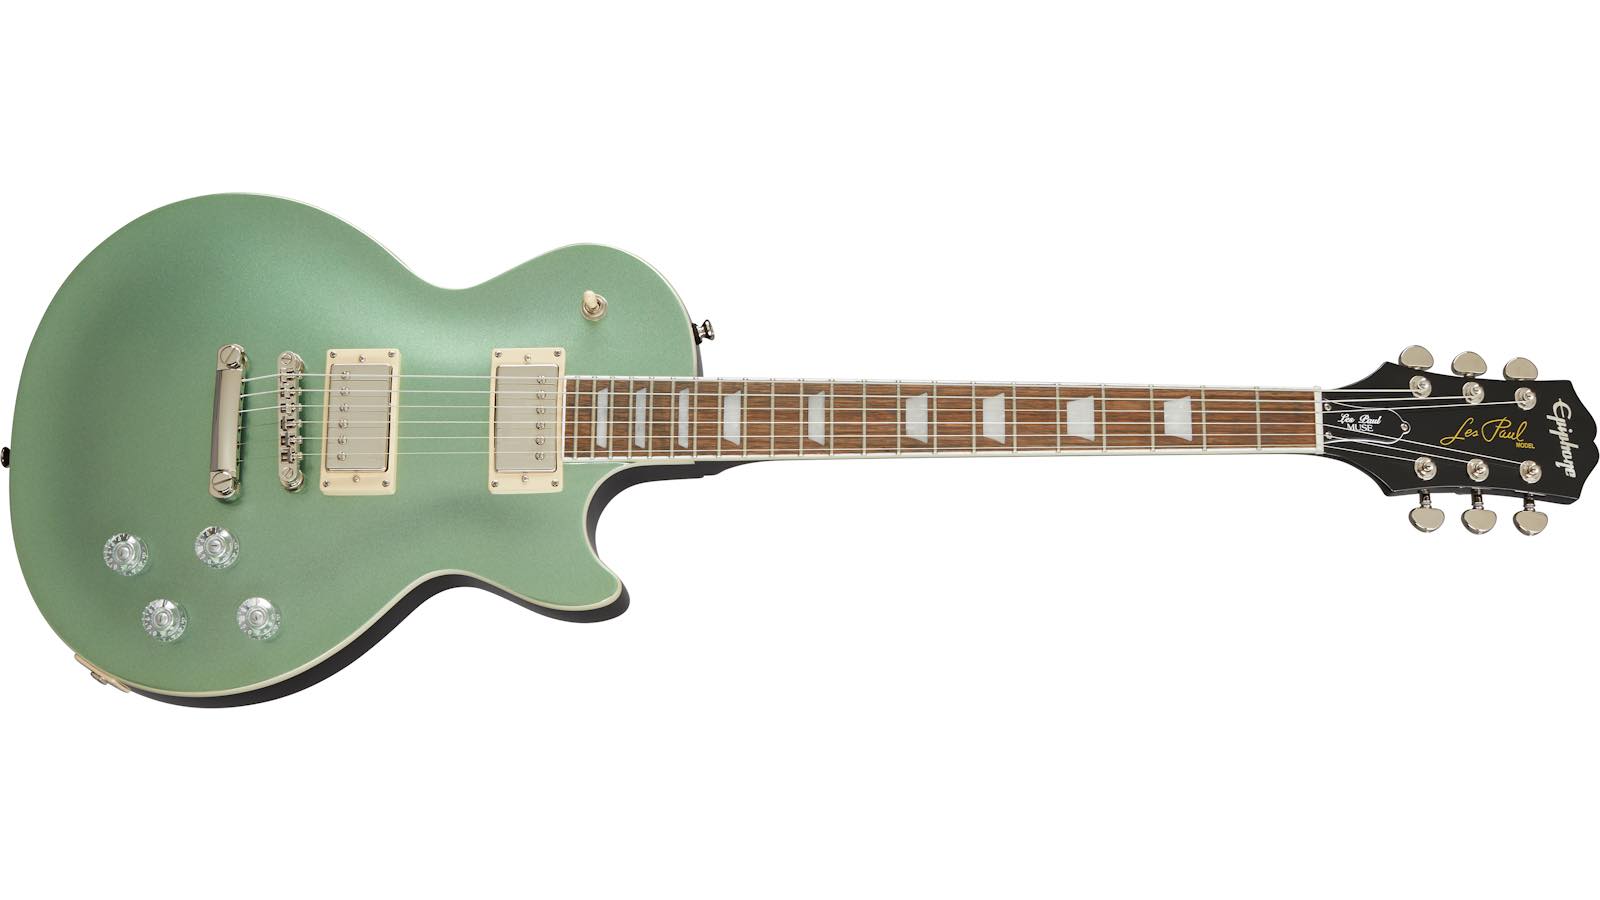 Epiphone Les Paul Muse Wanderlust Metallic Green chitarra guitar elettrica electric strumenti musicali